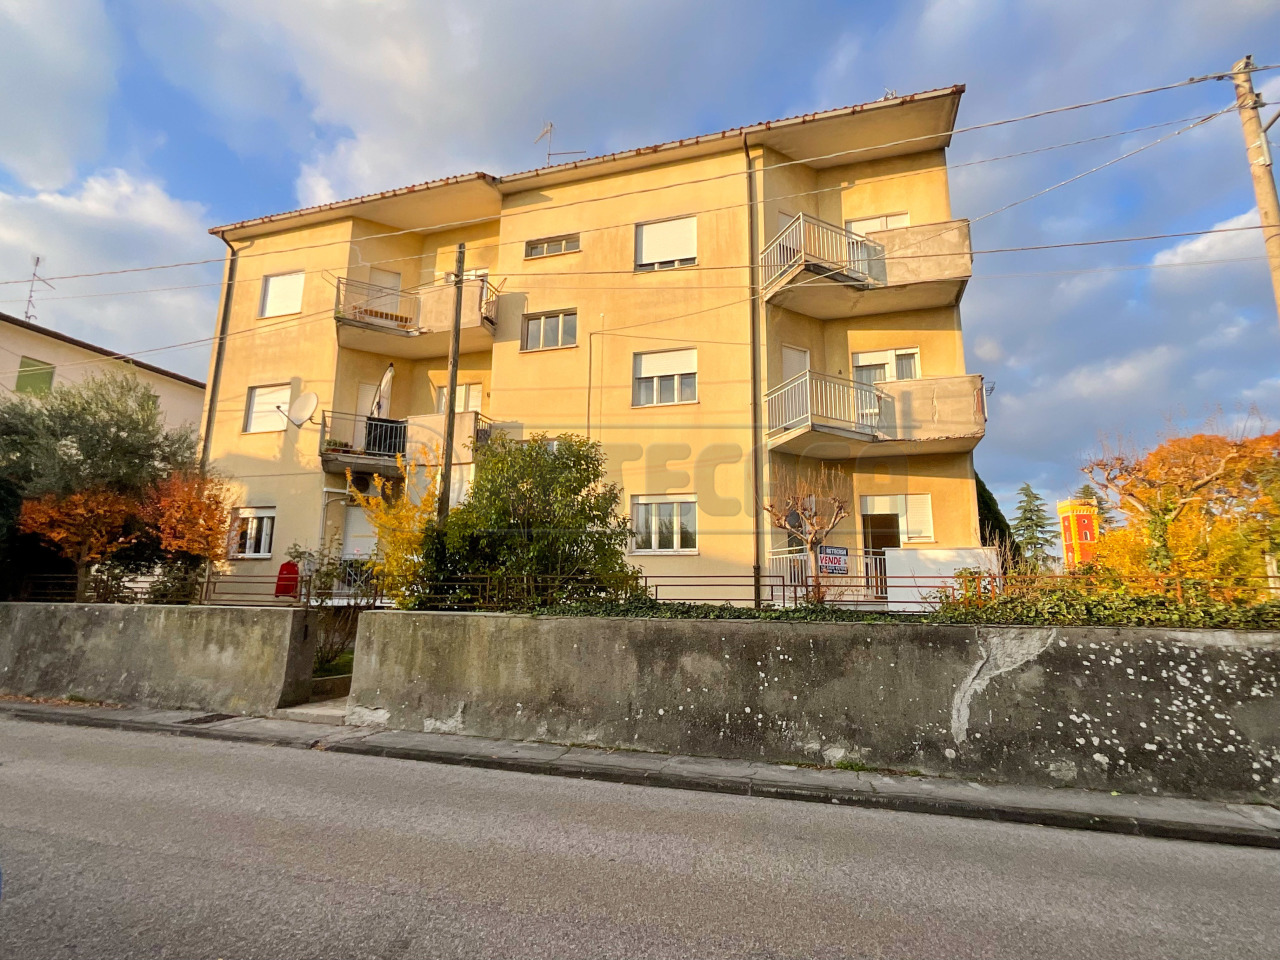 Appartamento in vendita a Sagrado, 5 locali, prezzo € 77.000 | PortaleAgenzieImmobiliari.it